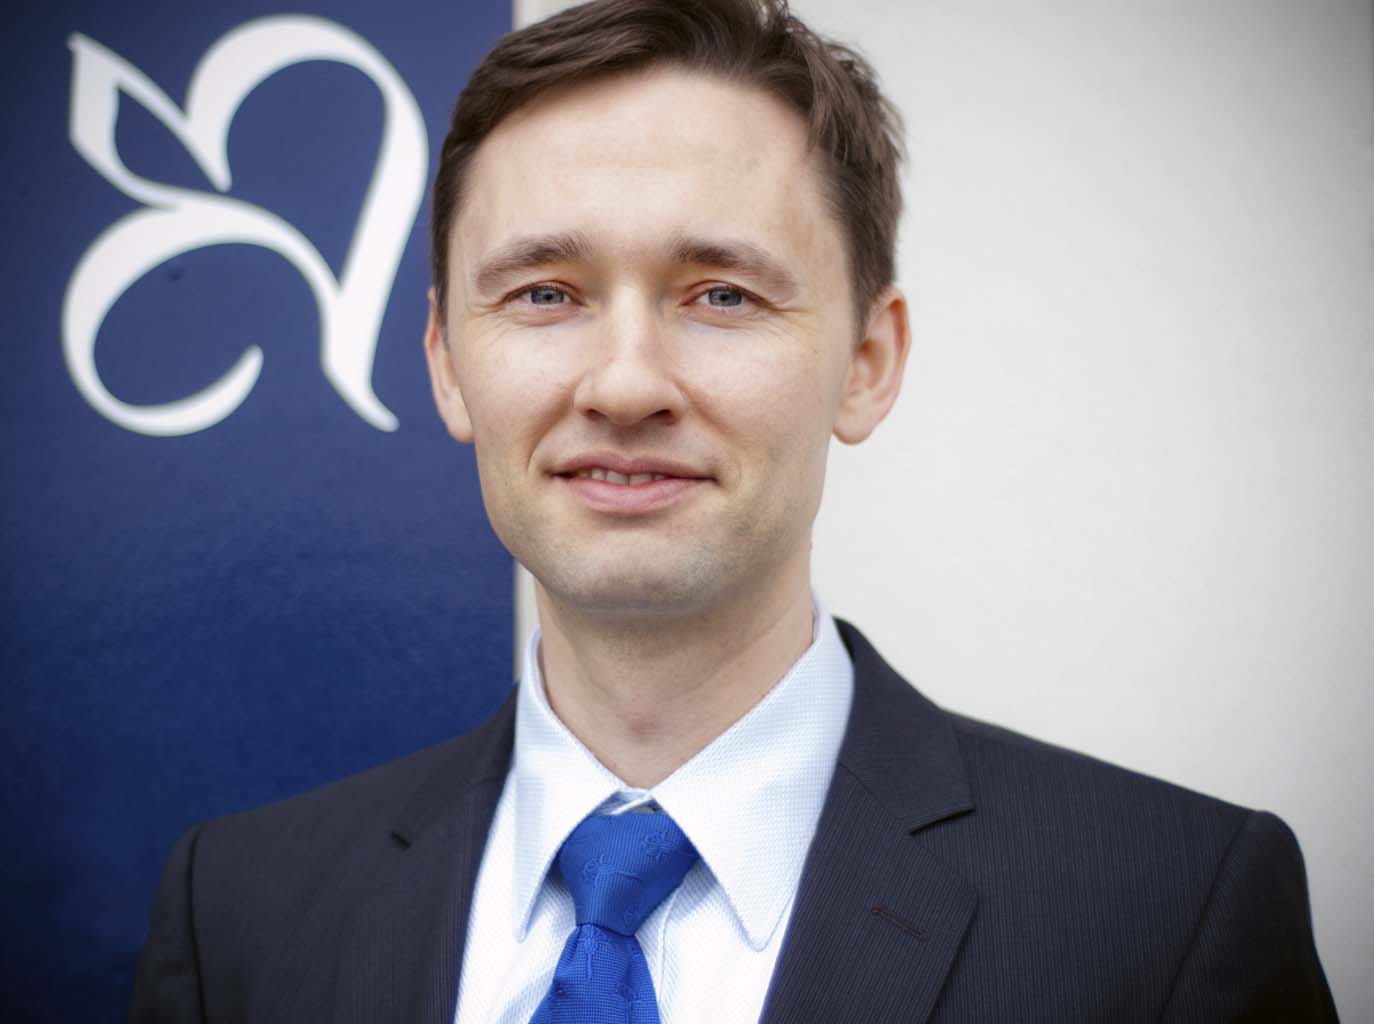 Bruno Baidenger freier Finanzberater und unabhängiger Versicherungsmakler in Karlsruhe